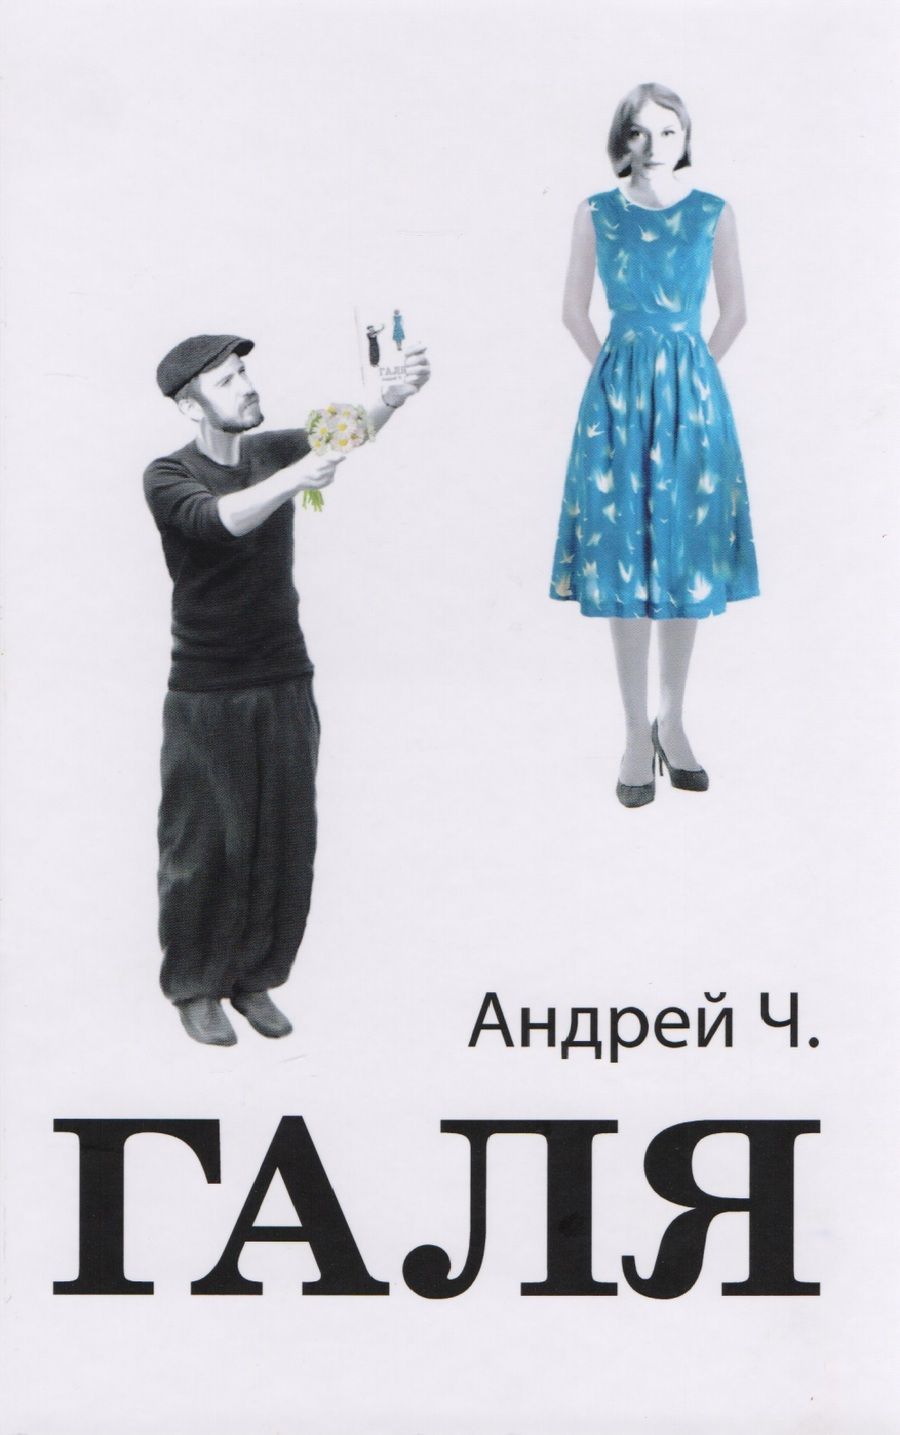 Обложка книги "Чернышков: Галя"